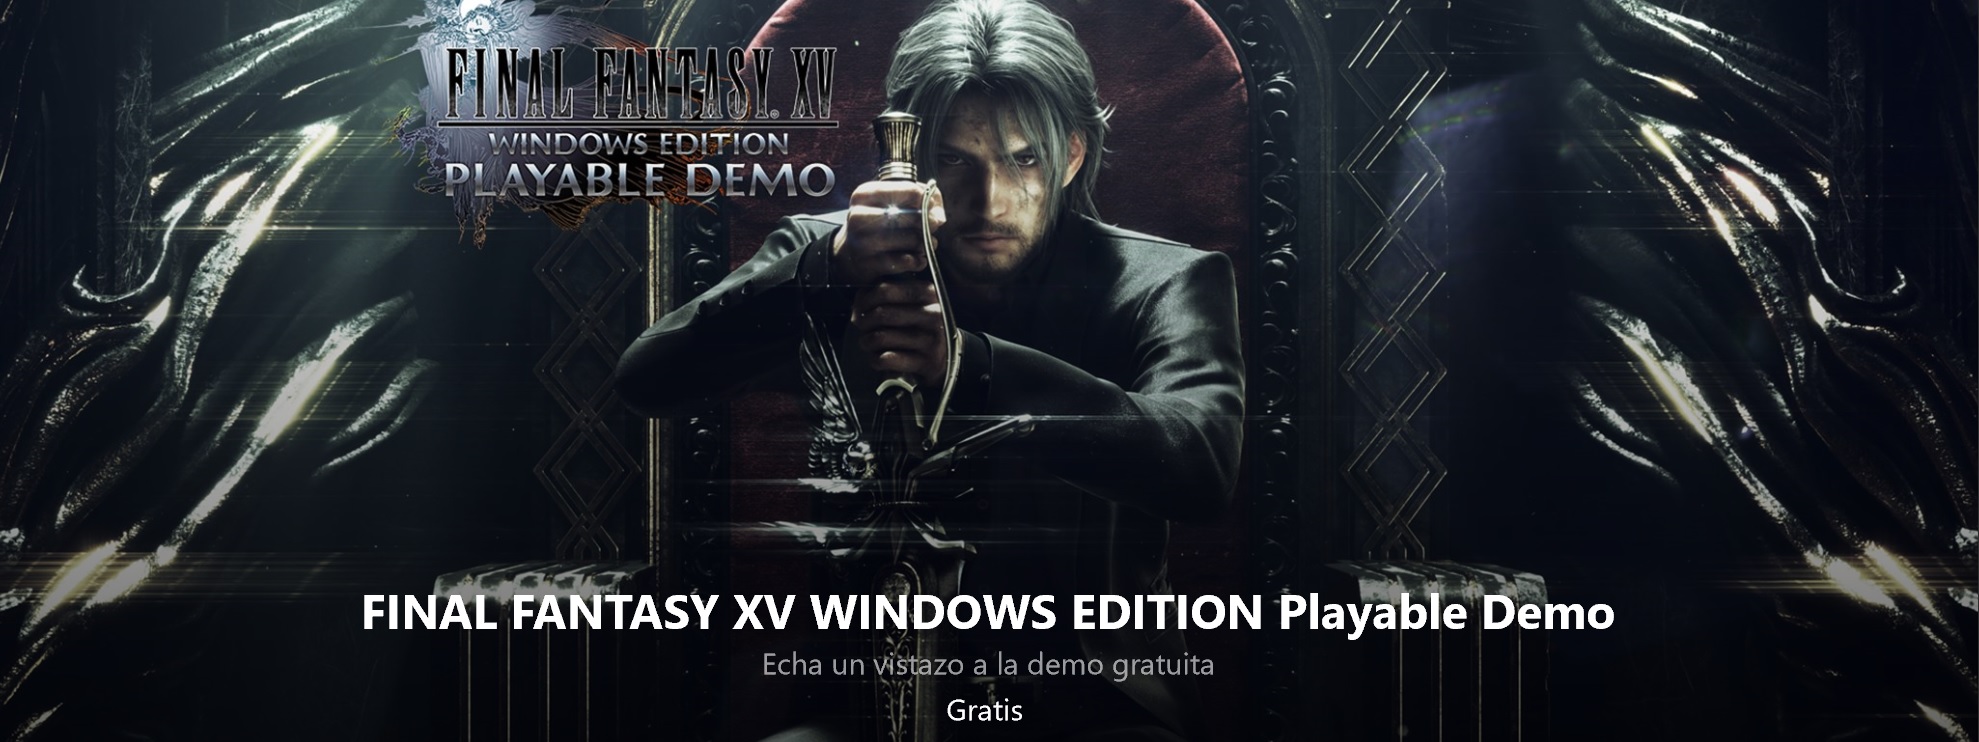 Ya puedes probar la demo de Final Fintasy XV Windows Edition